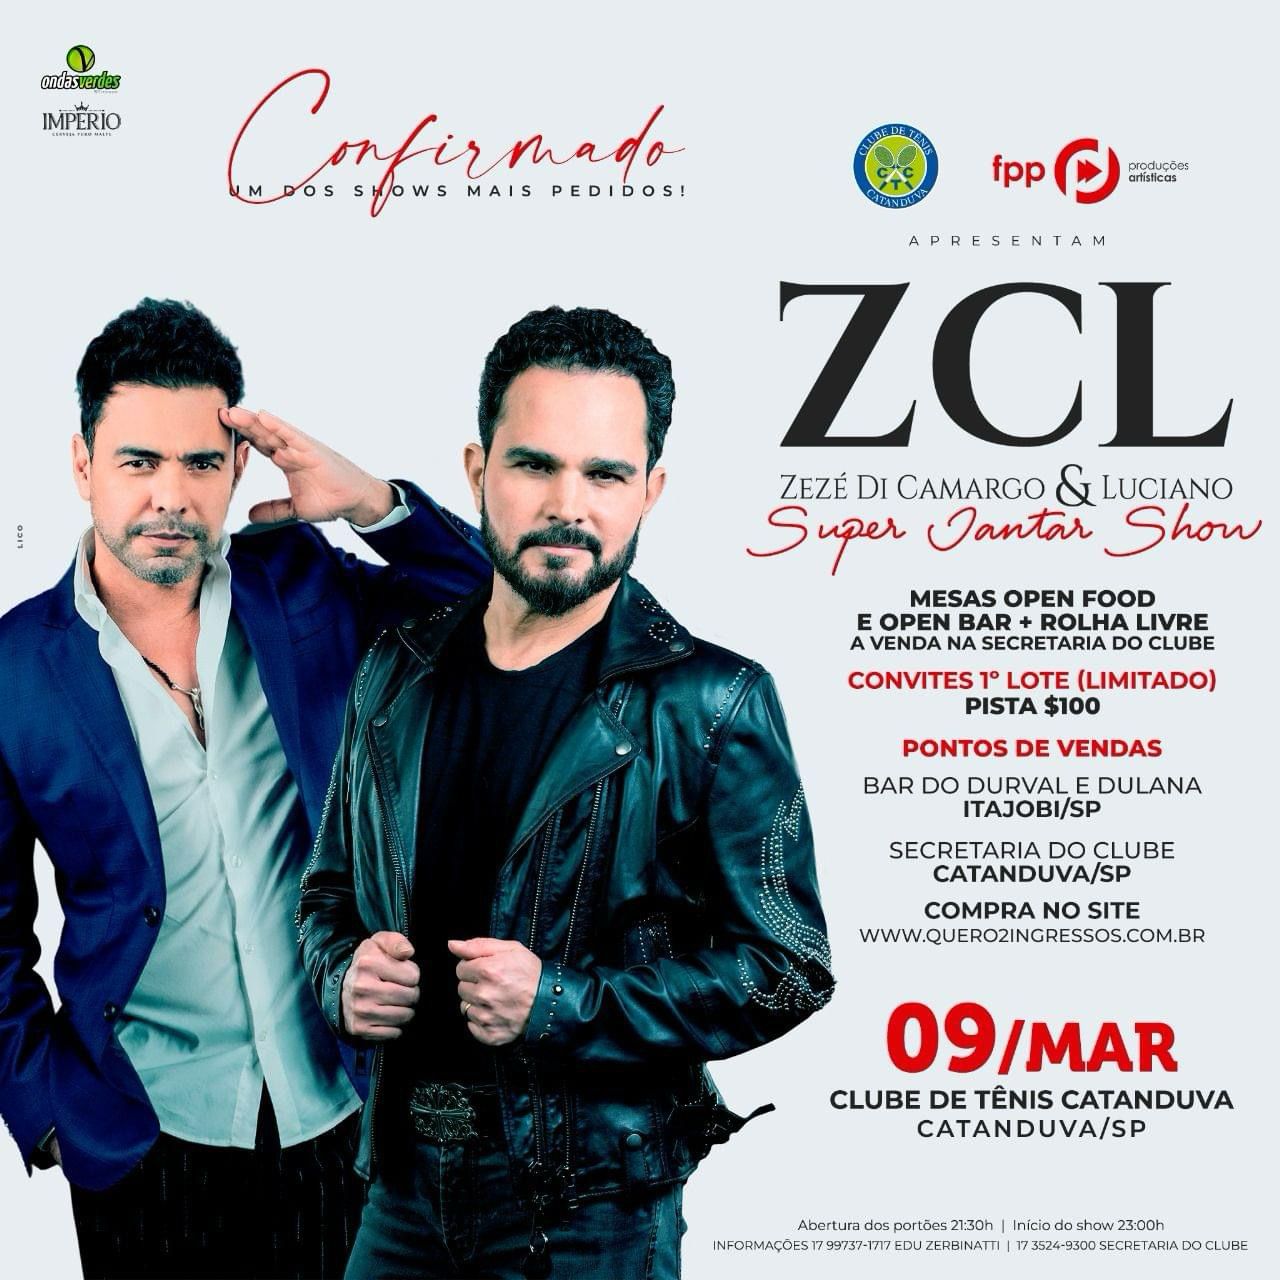 Super Jantar Show com Zezé di Camargo & Luciano,